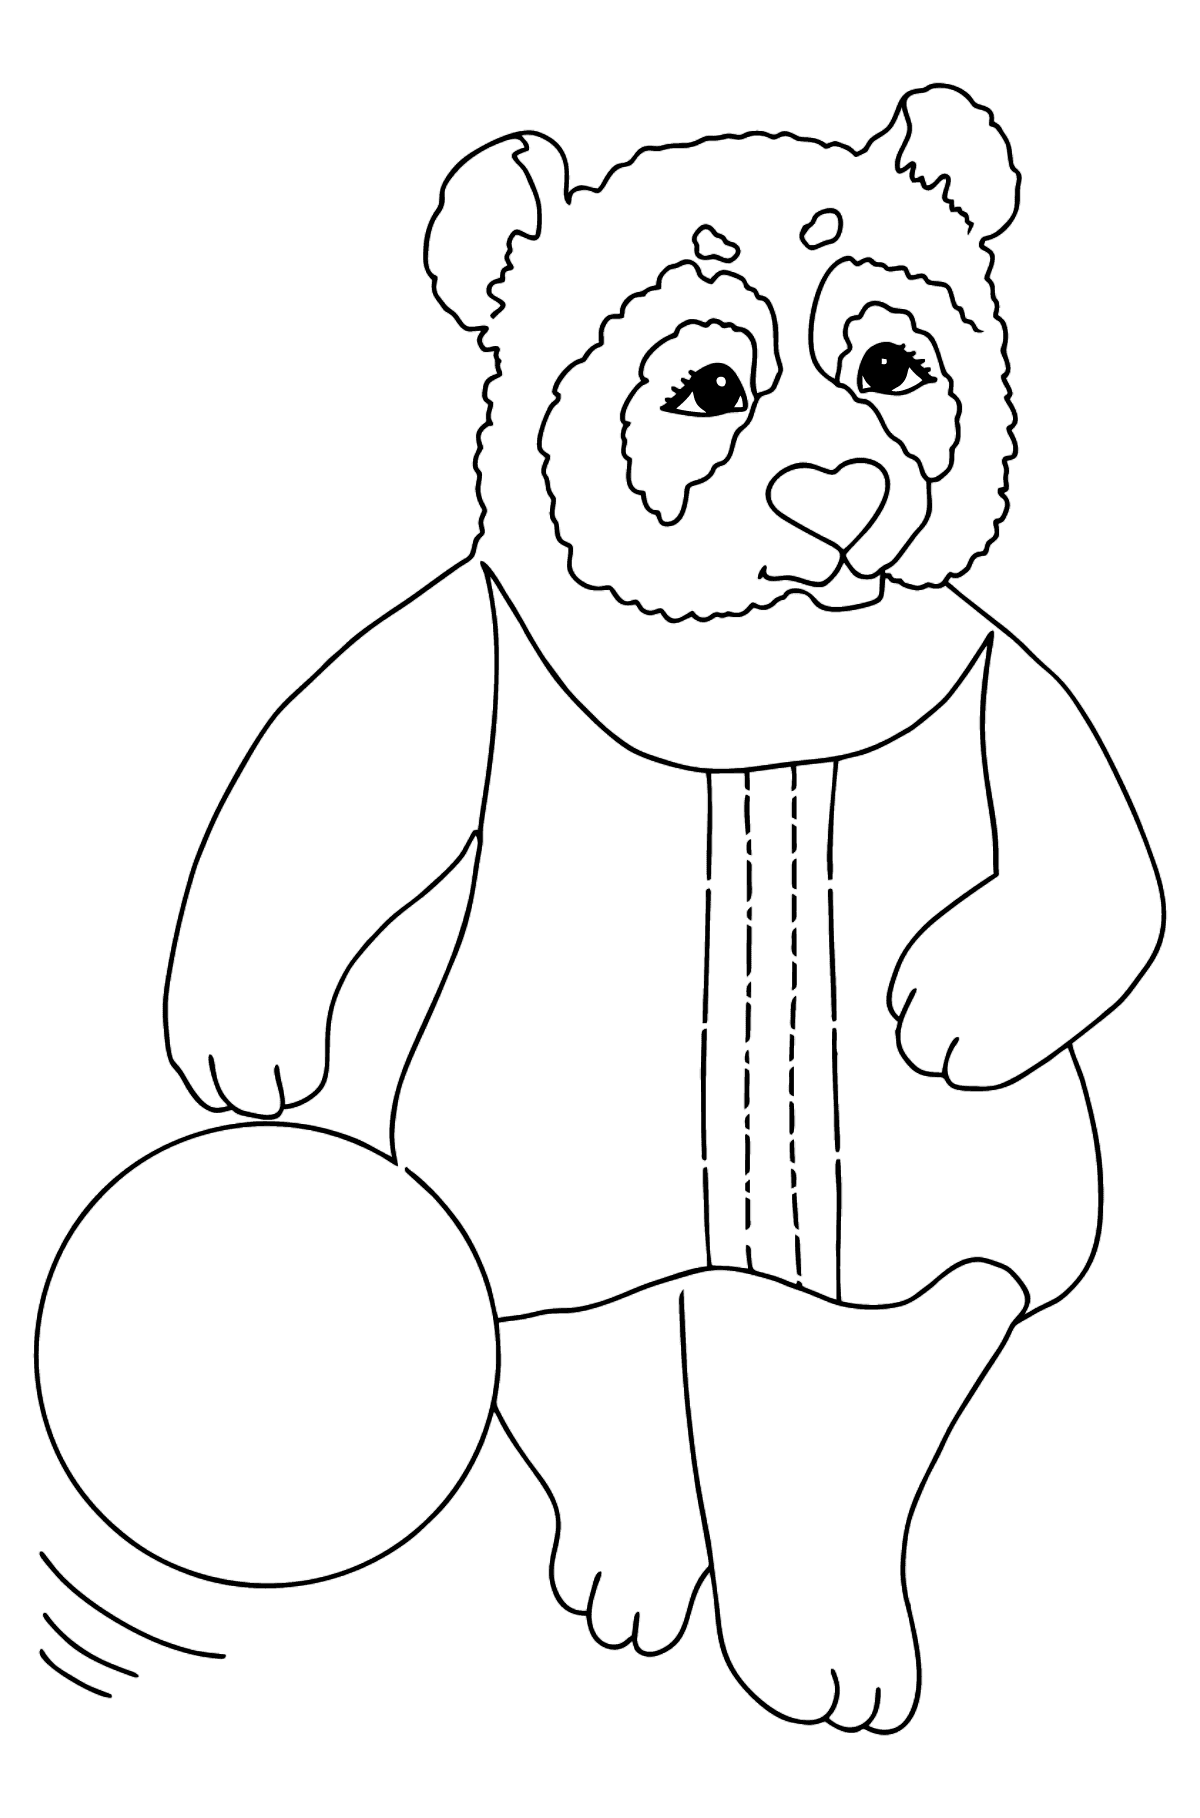 Boyama sayfası bebekler için panda (basit) - Boyamalar çocuklar için